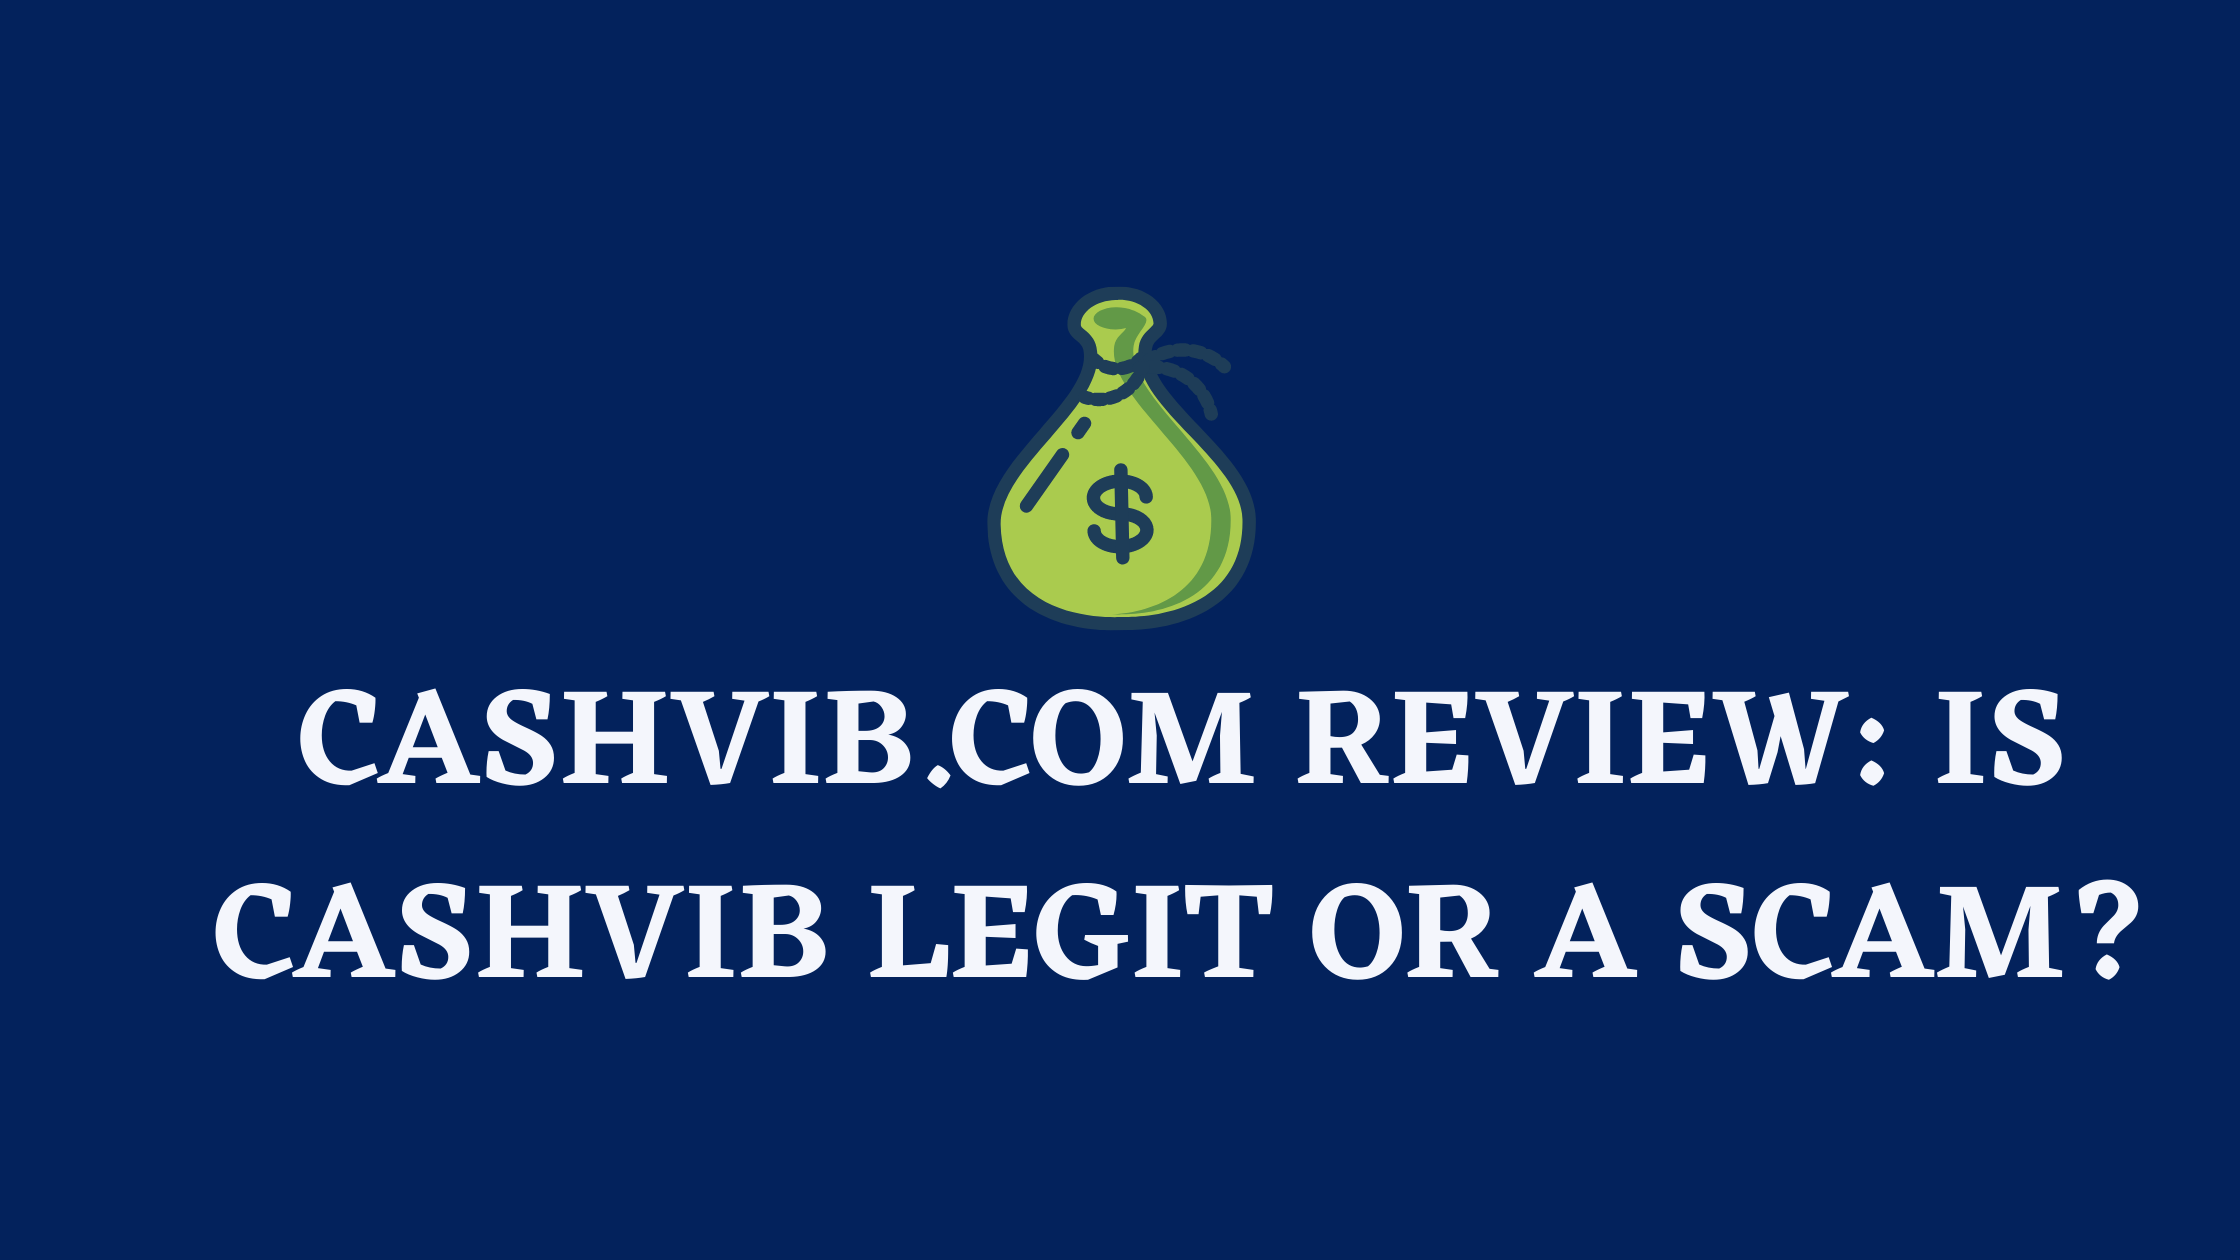 Cashvib.com review